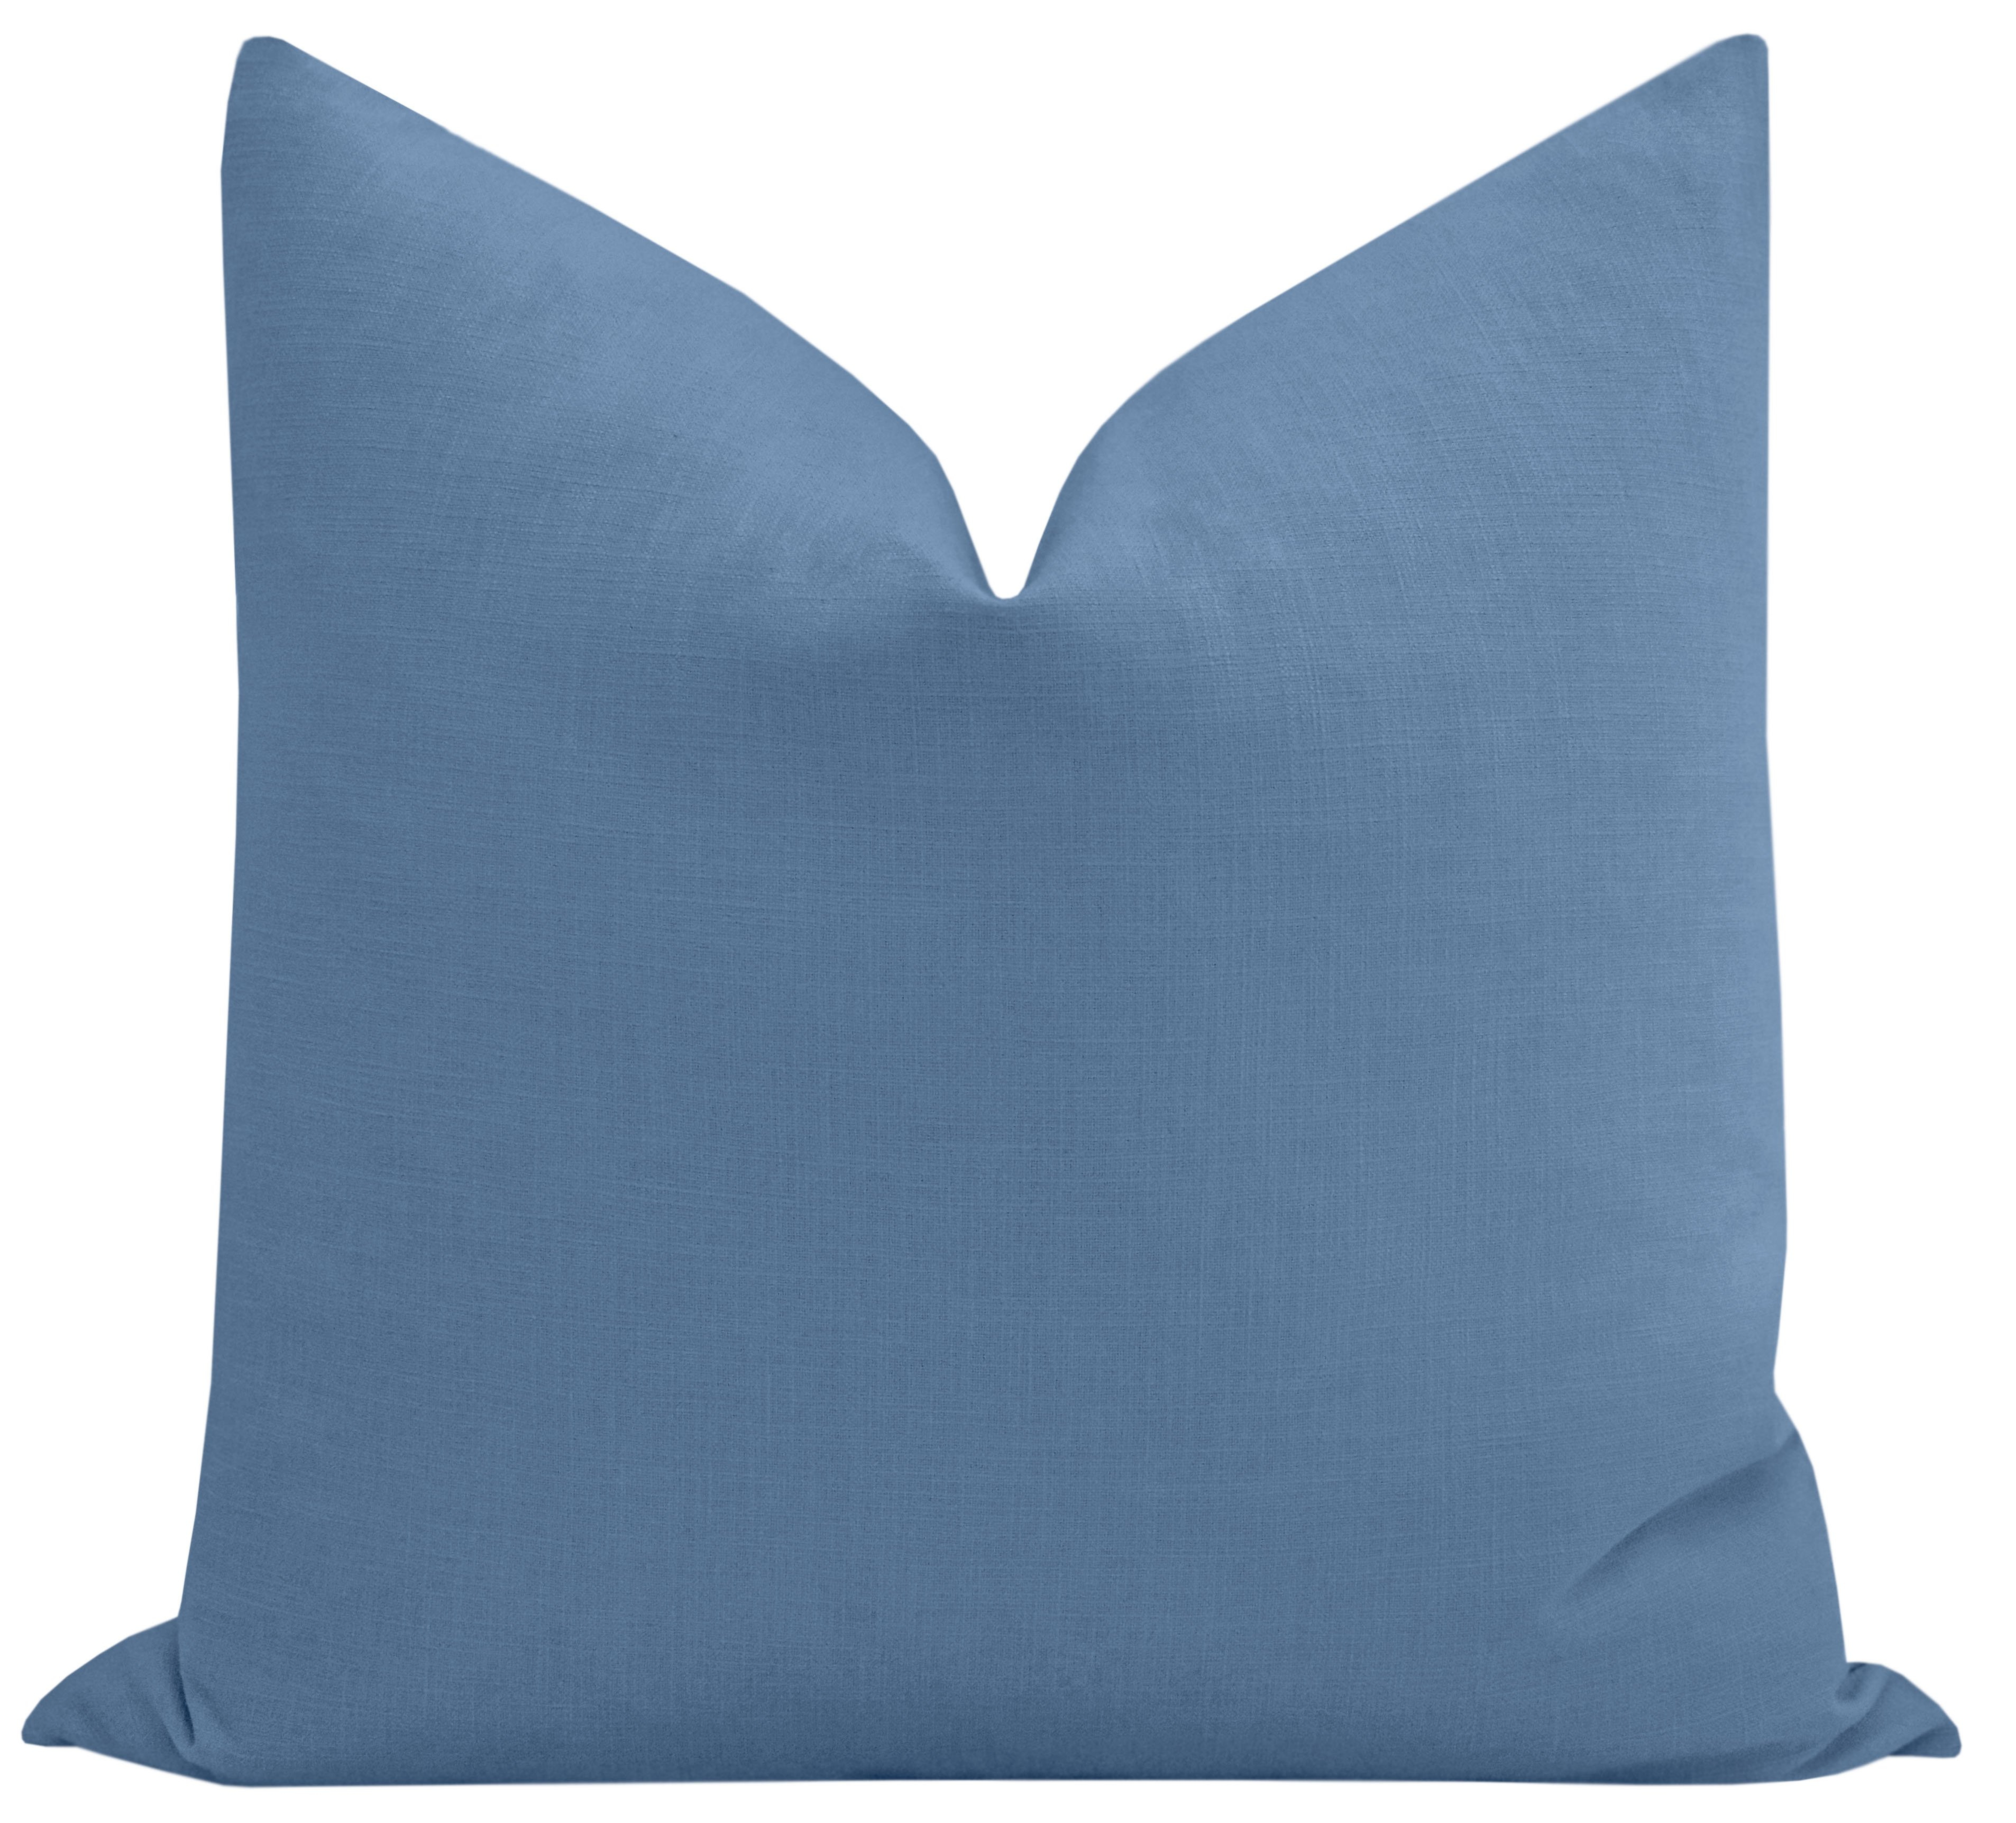 Classic Linen // Calypso Blue (new) - 18" X 18" - Little Design Company